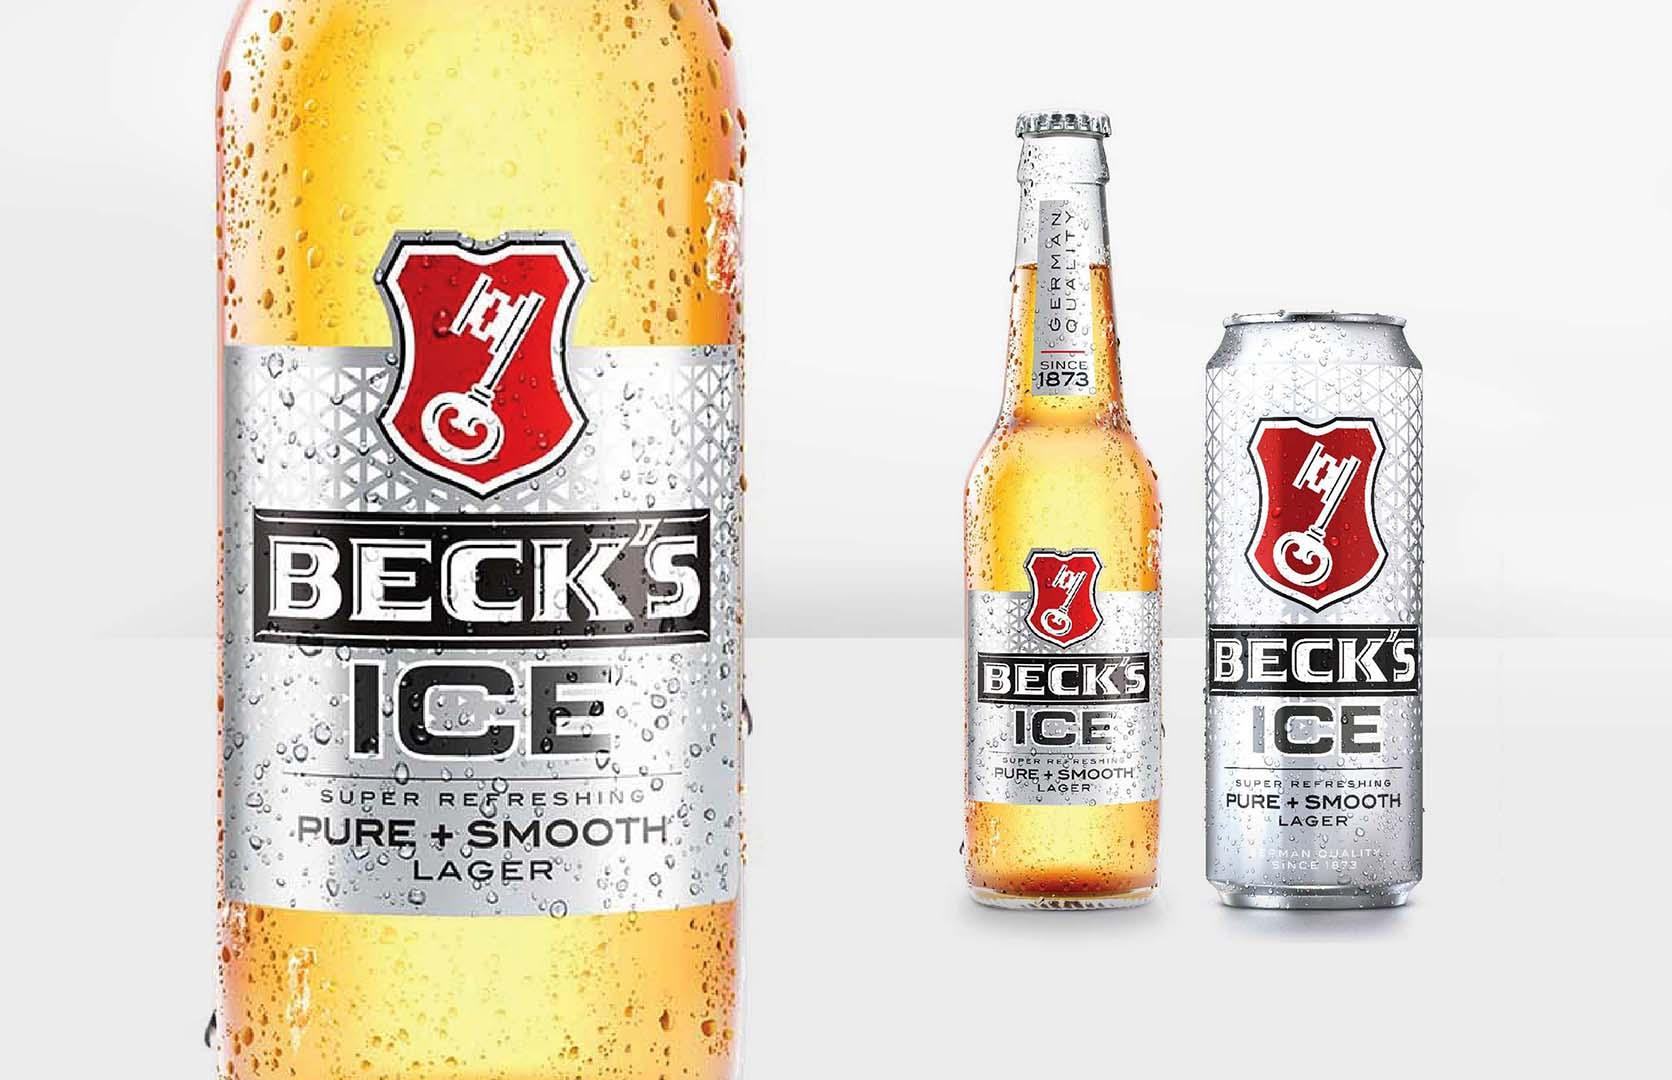 Thiết kế bắt mắt, ấn tượng của bia Beck’s Ice 